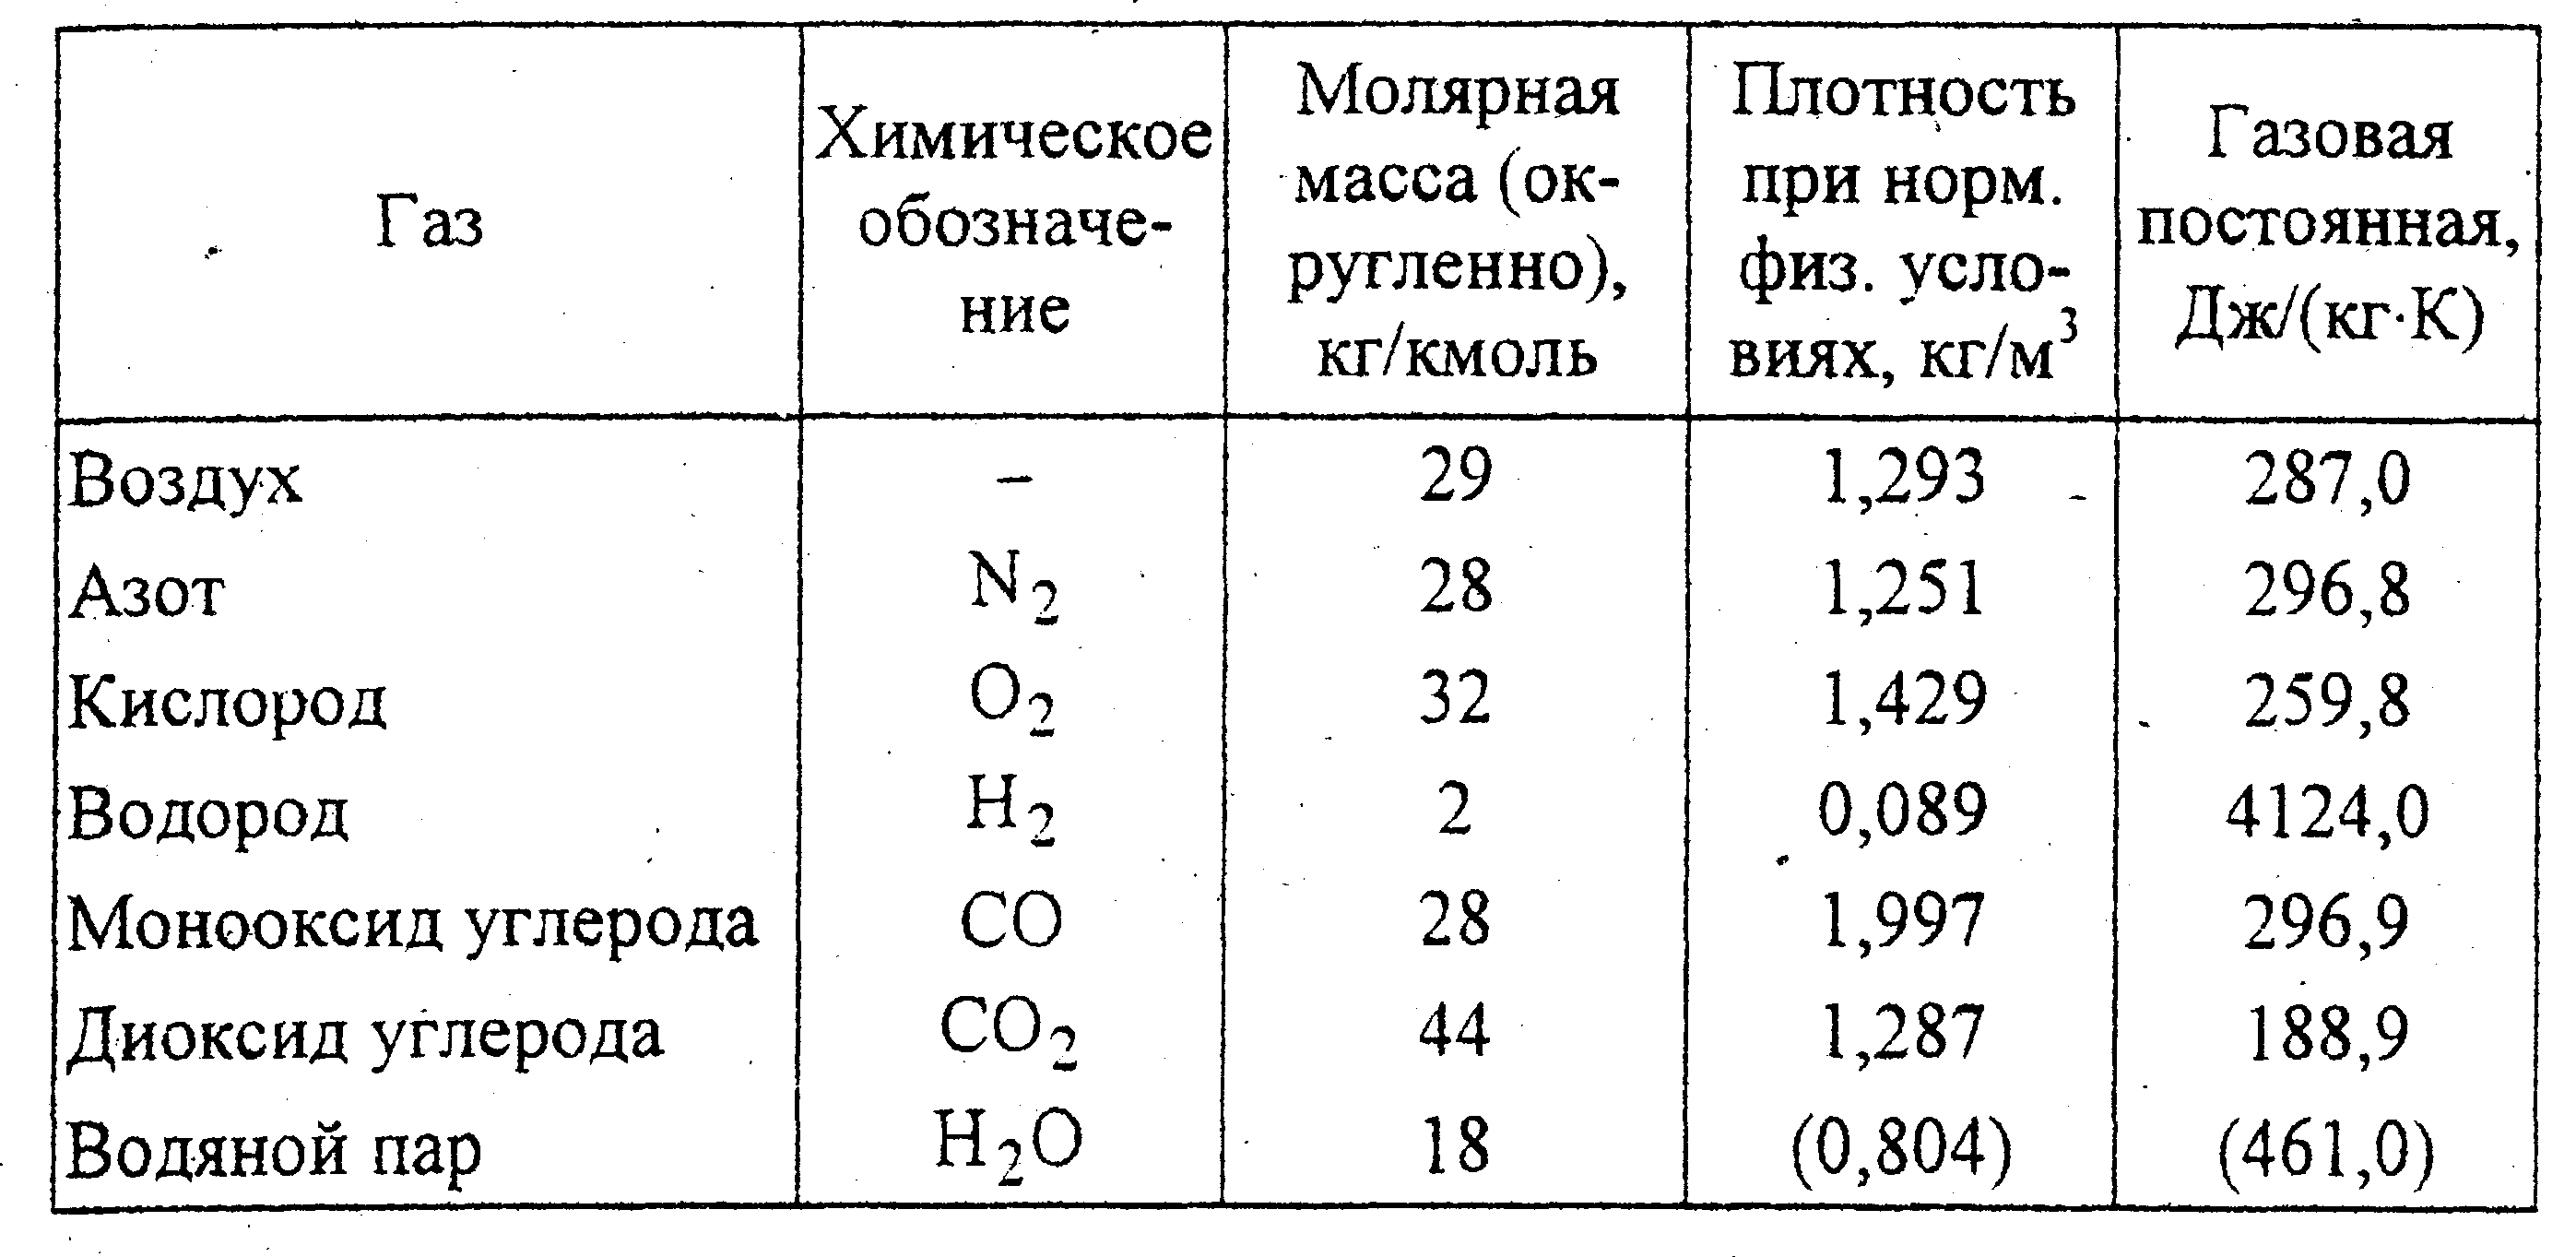 Плотность паров вещества по метану